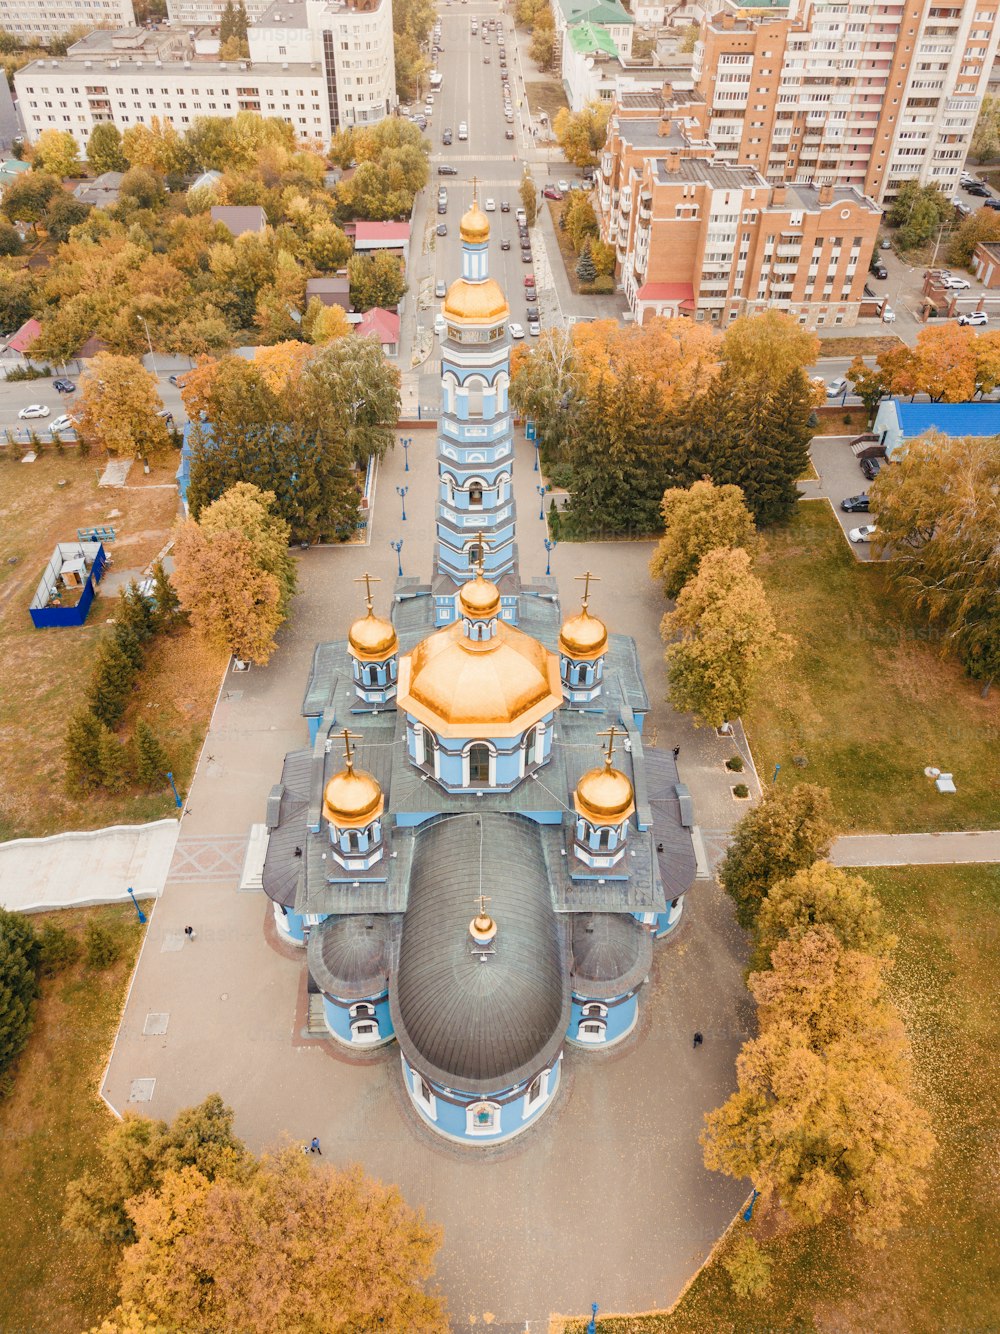 Vista aérea de la Navidad de la Catedral de la Santísima Virgen alrededor de la manzana residencial de la ciudad. Atracciones y destinos religiosos y turísticos